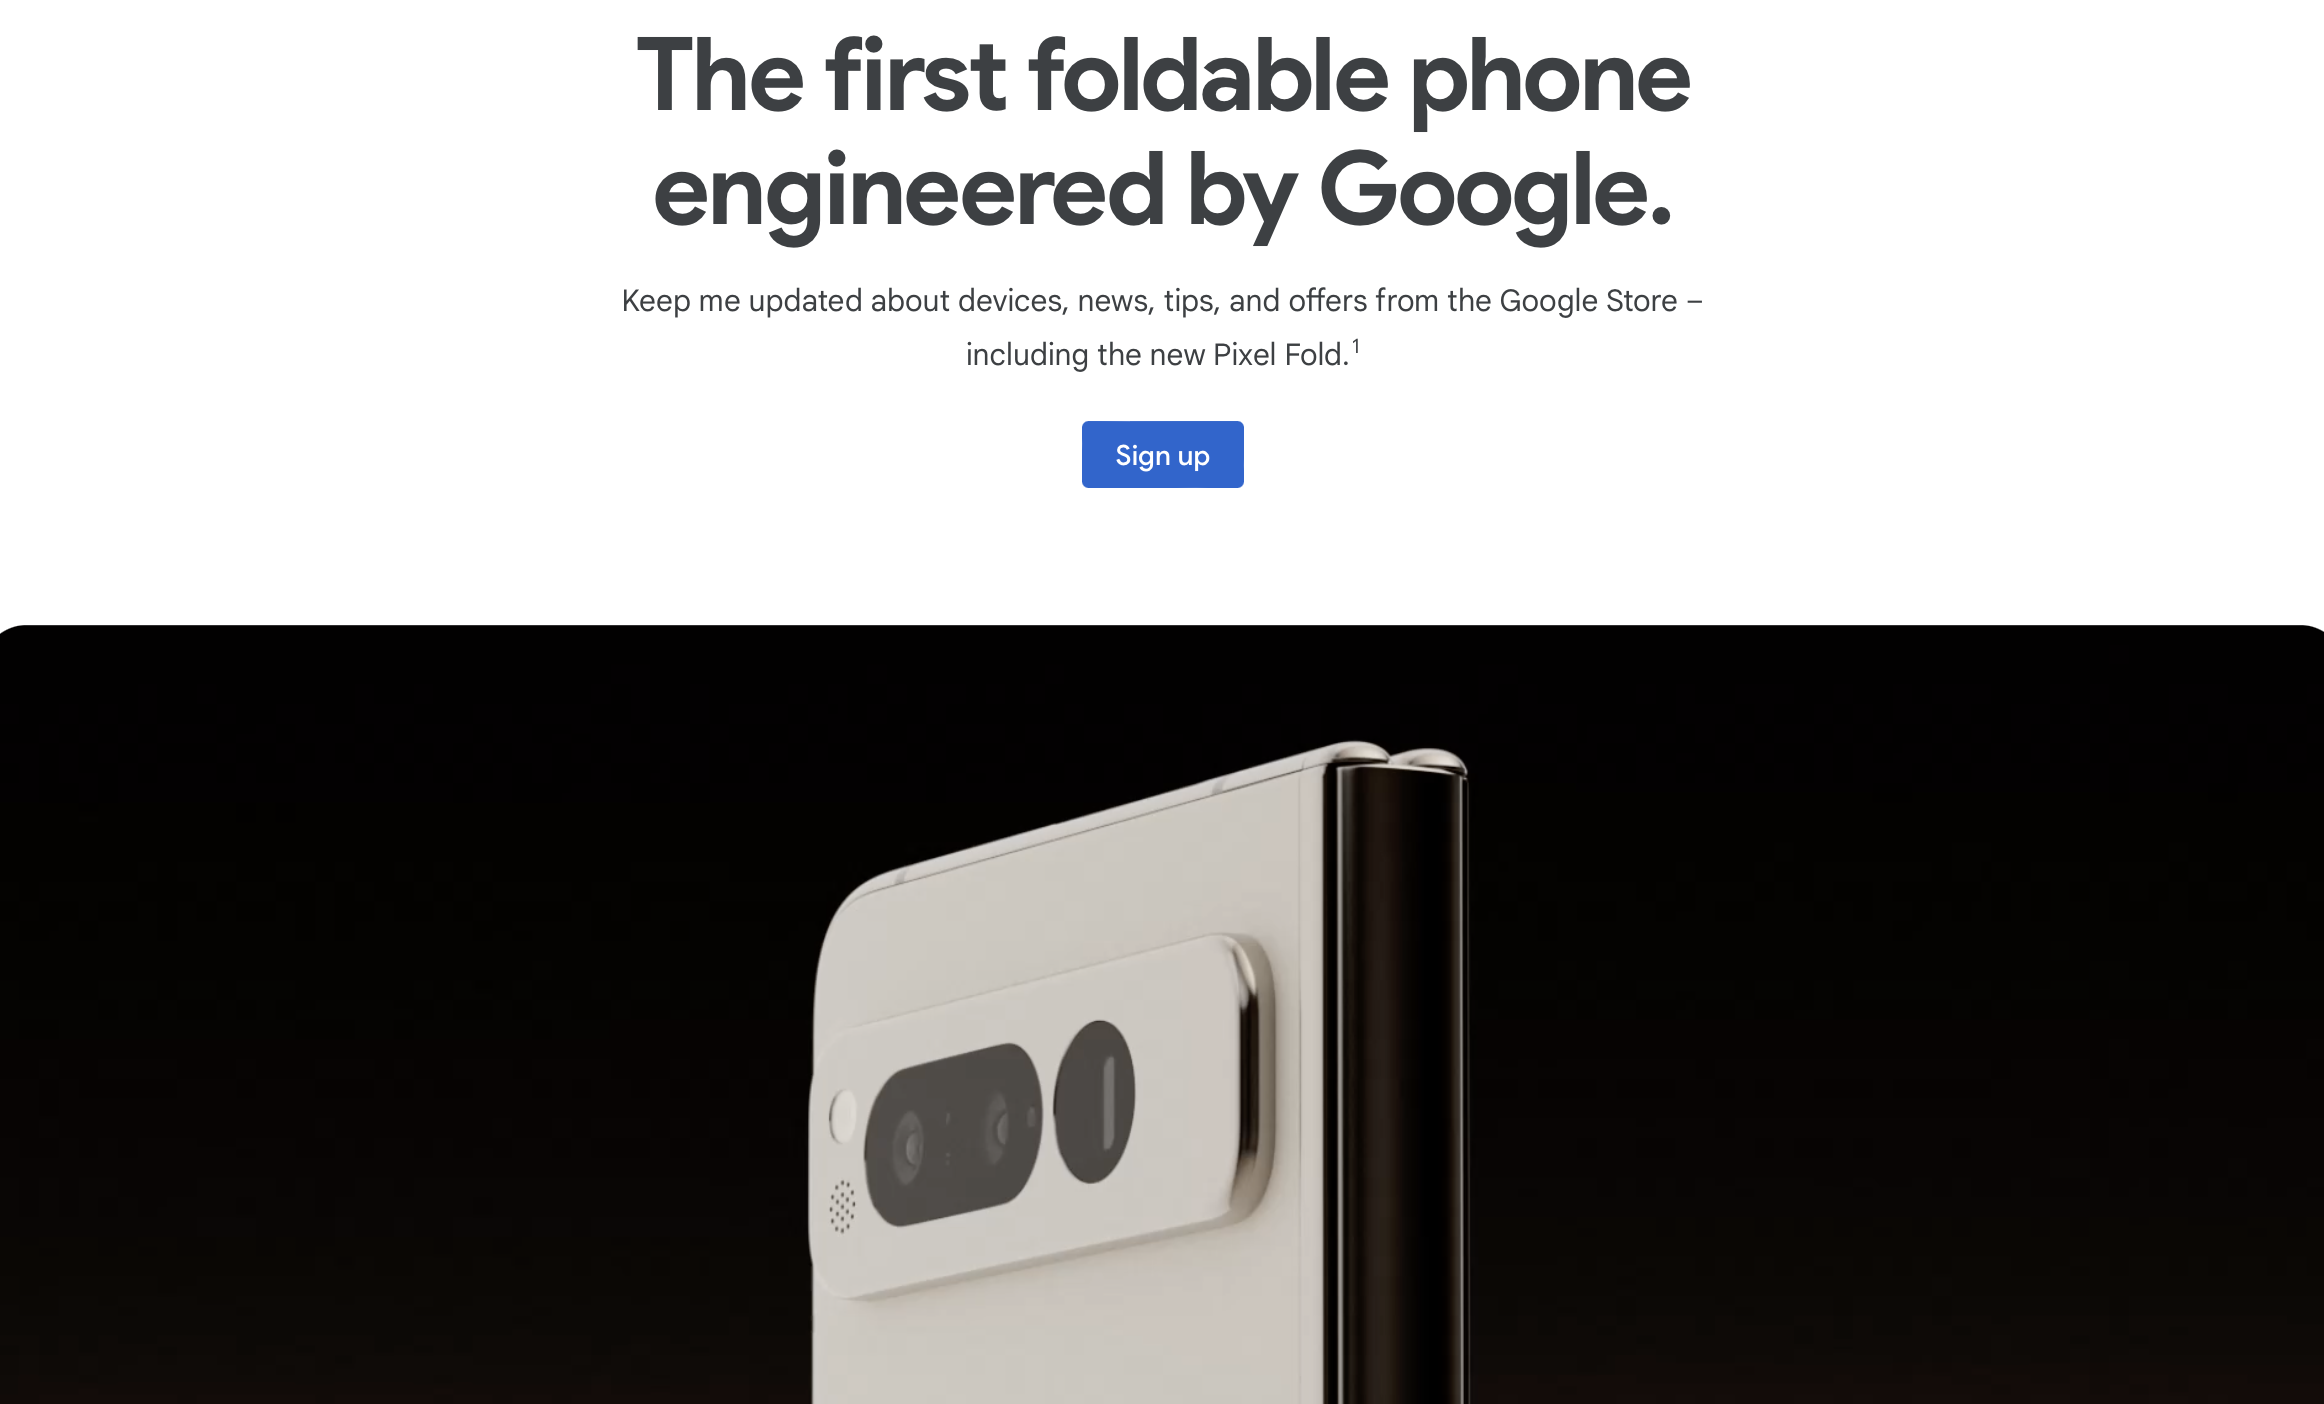 Google ujawnia swój składany smartfon Pixel Fold tuż przed premierą